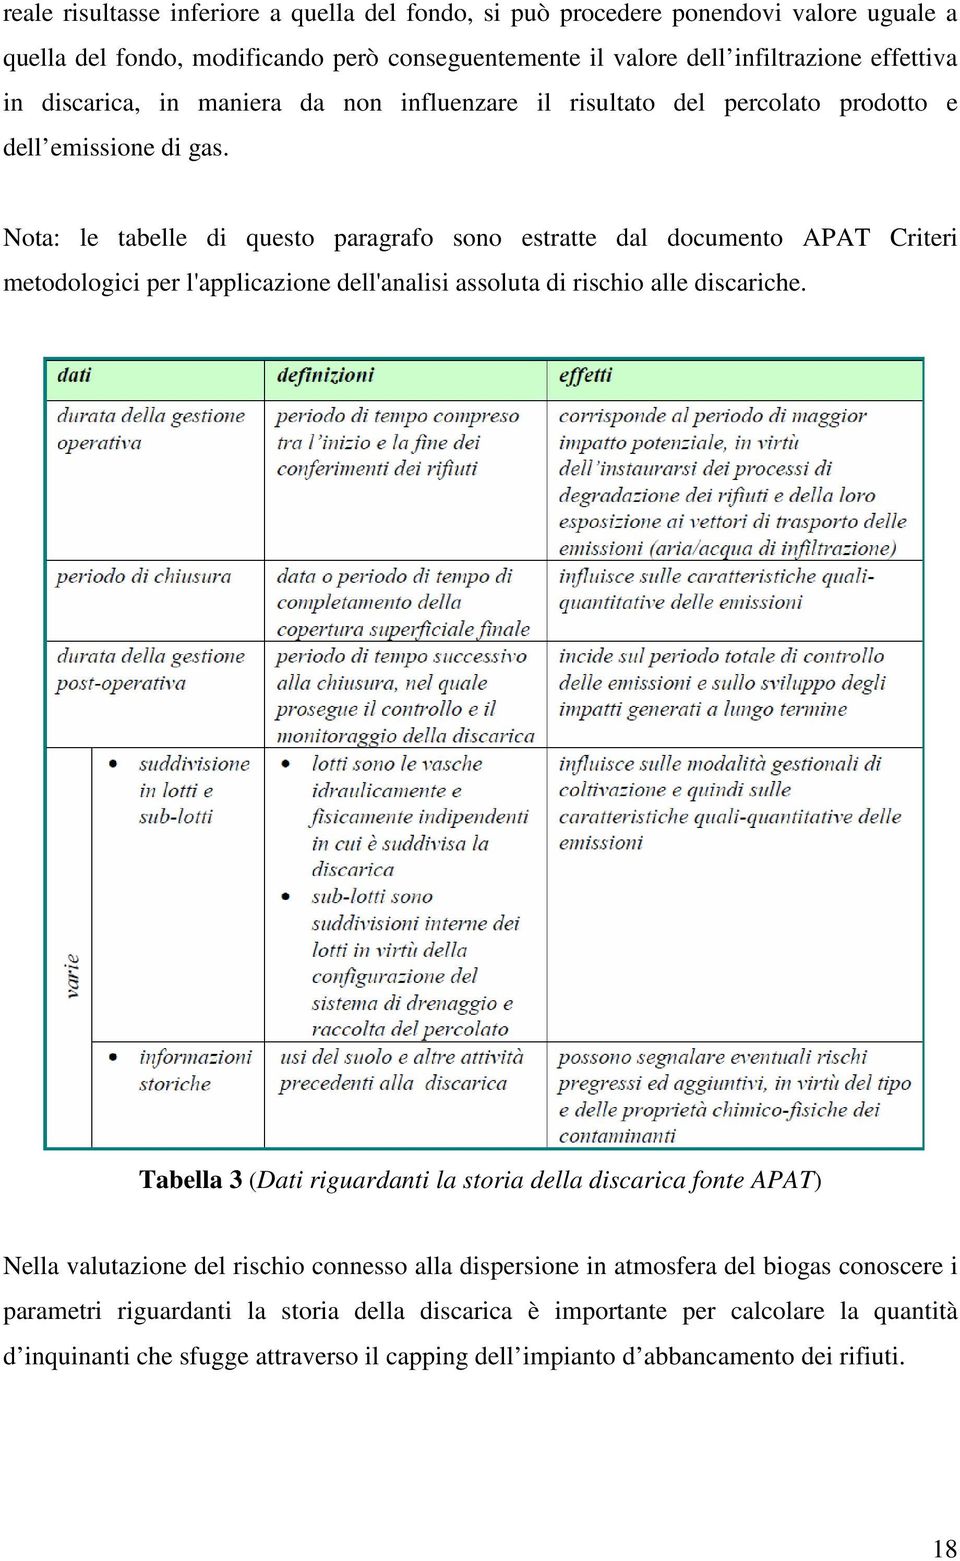 Nota: le tabelle di questo paragrafo sono estratte dal documento APAT Criteri metodologici per l'applicazione dell'analisi assoluta di rischio alle discariche.